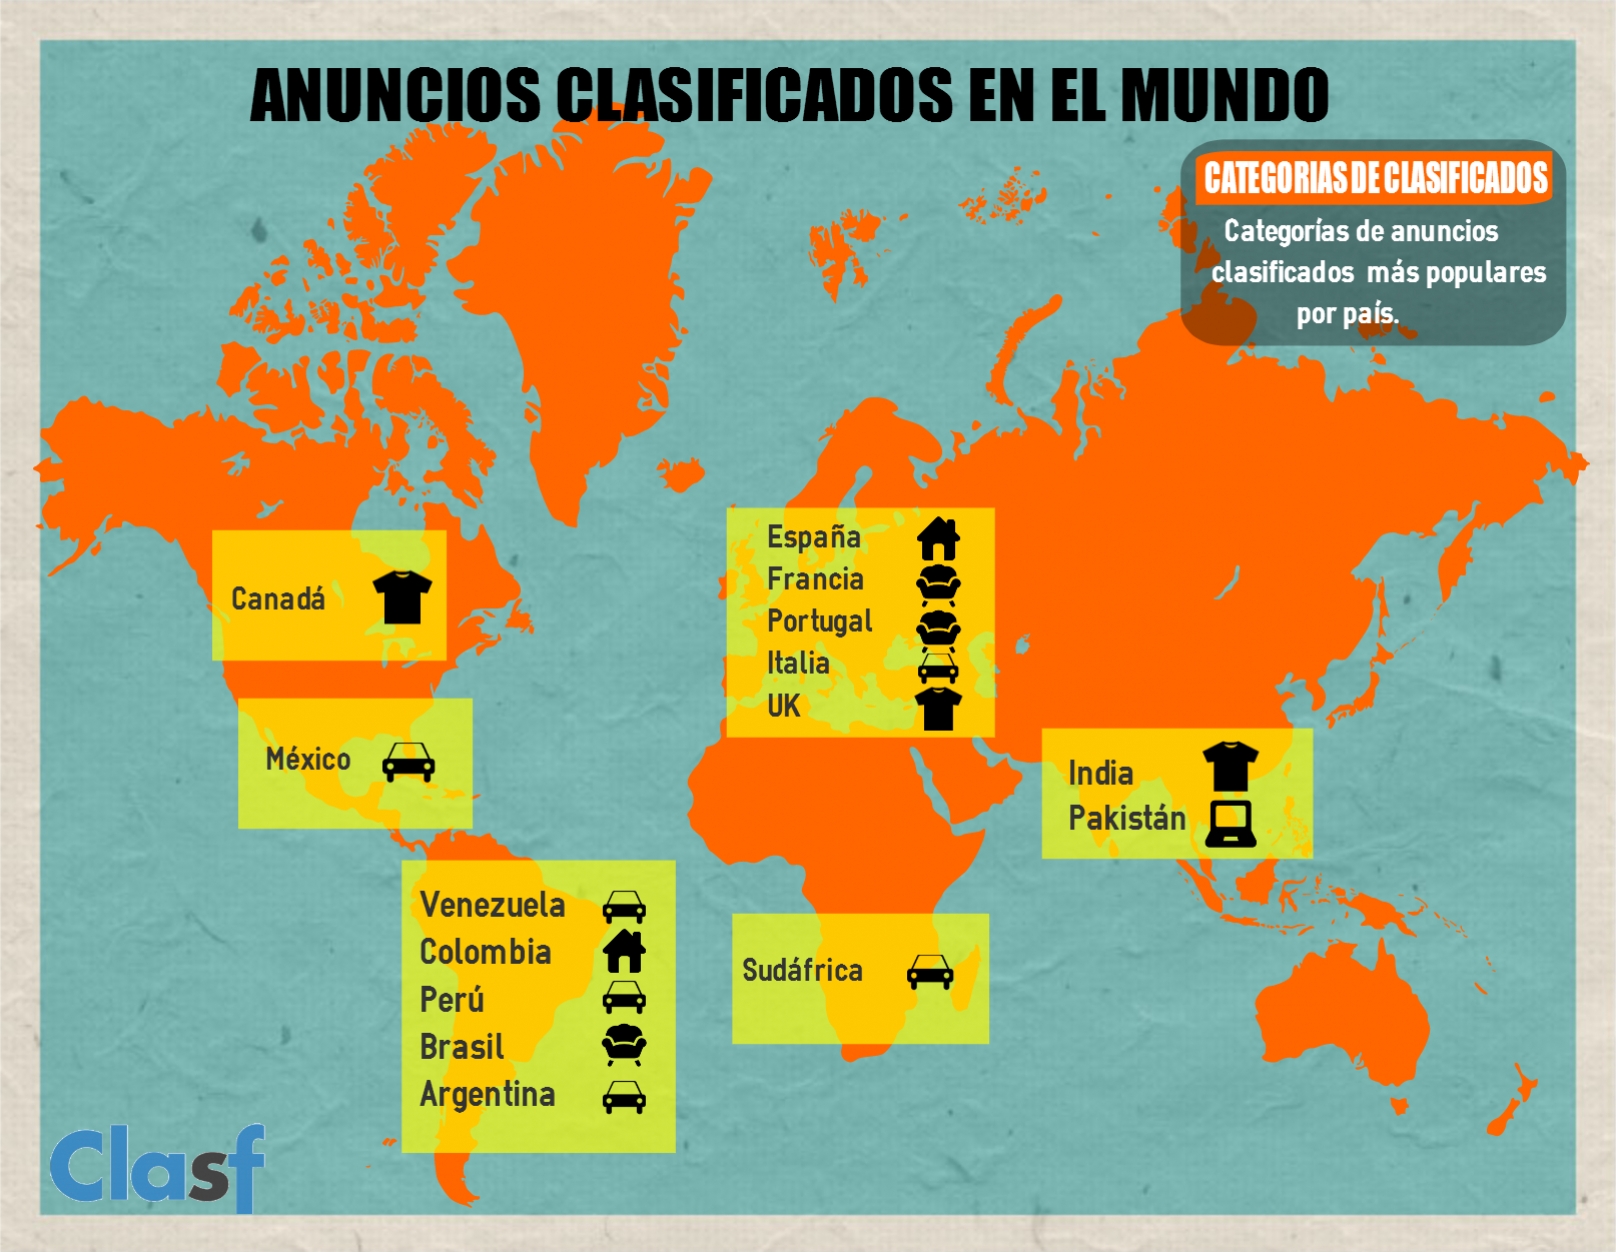 Estudio: Anuncios clasificados en el mundo